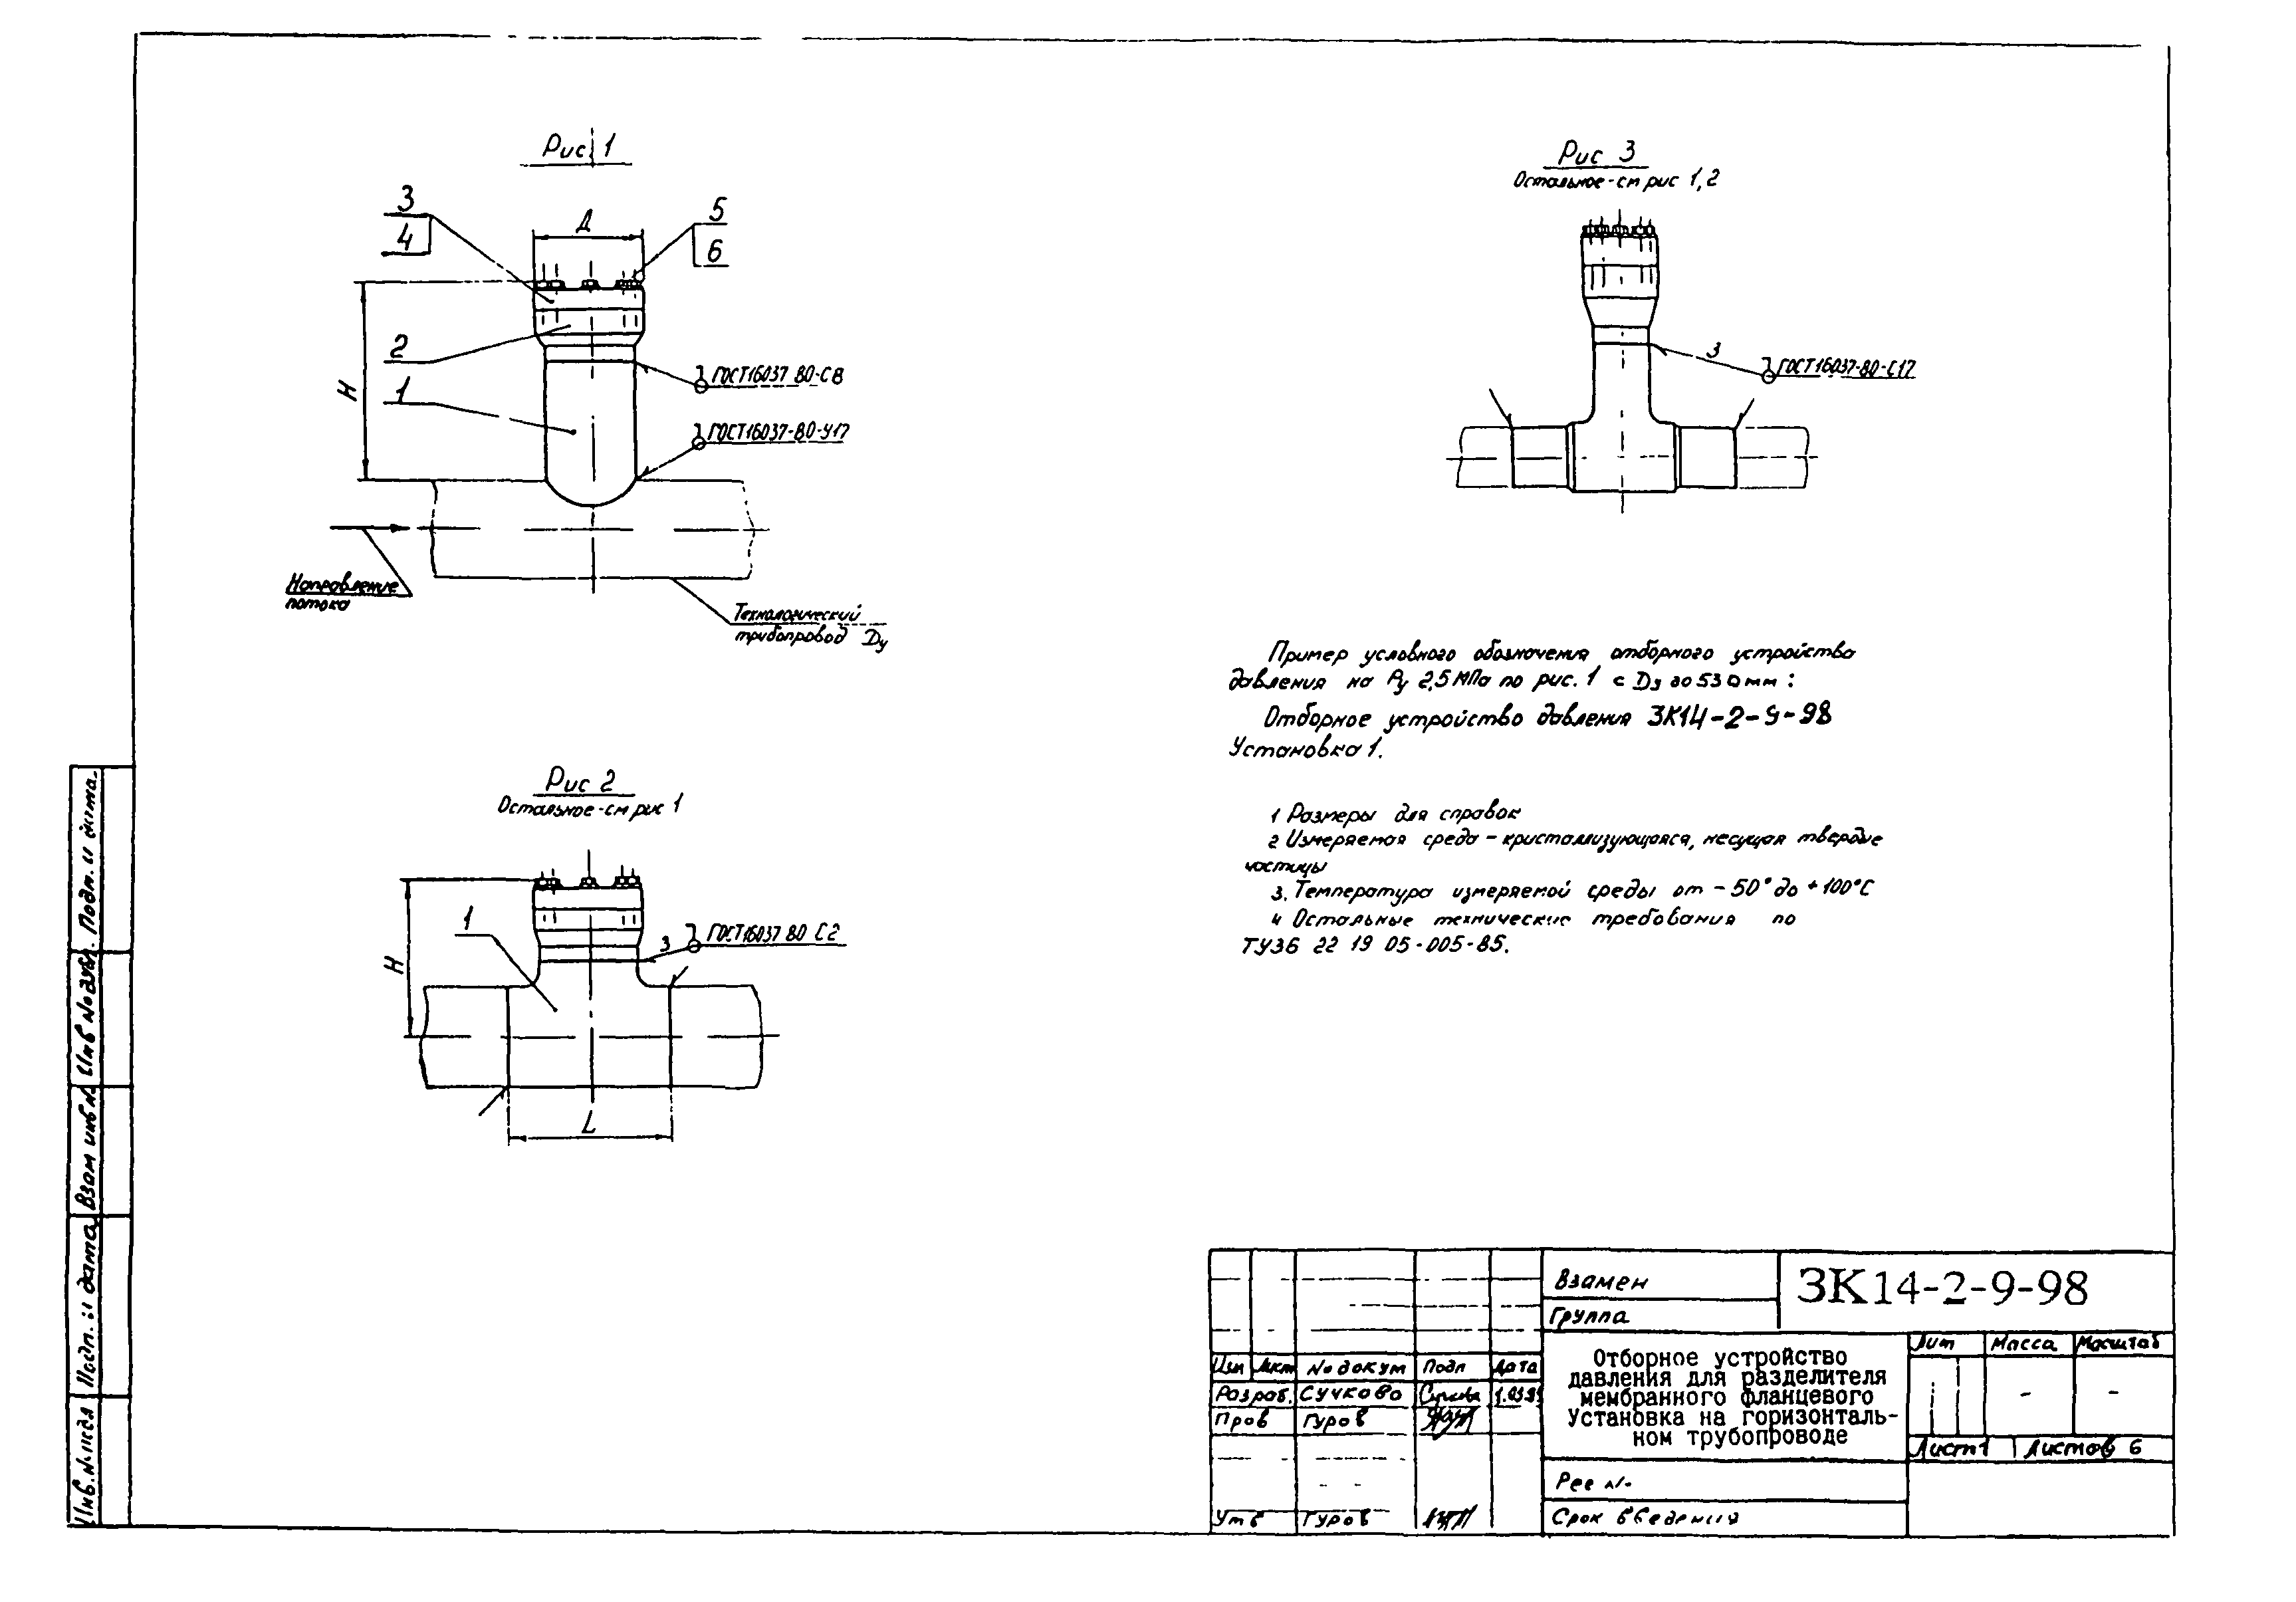 Зк4-223-89 закладная конструкция